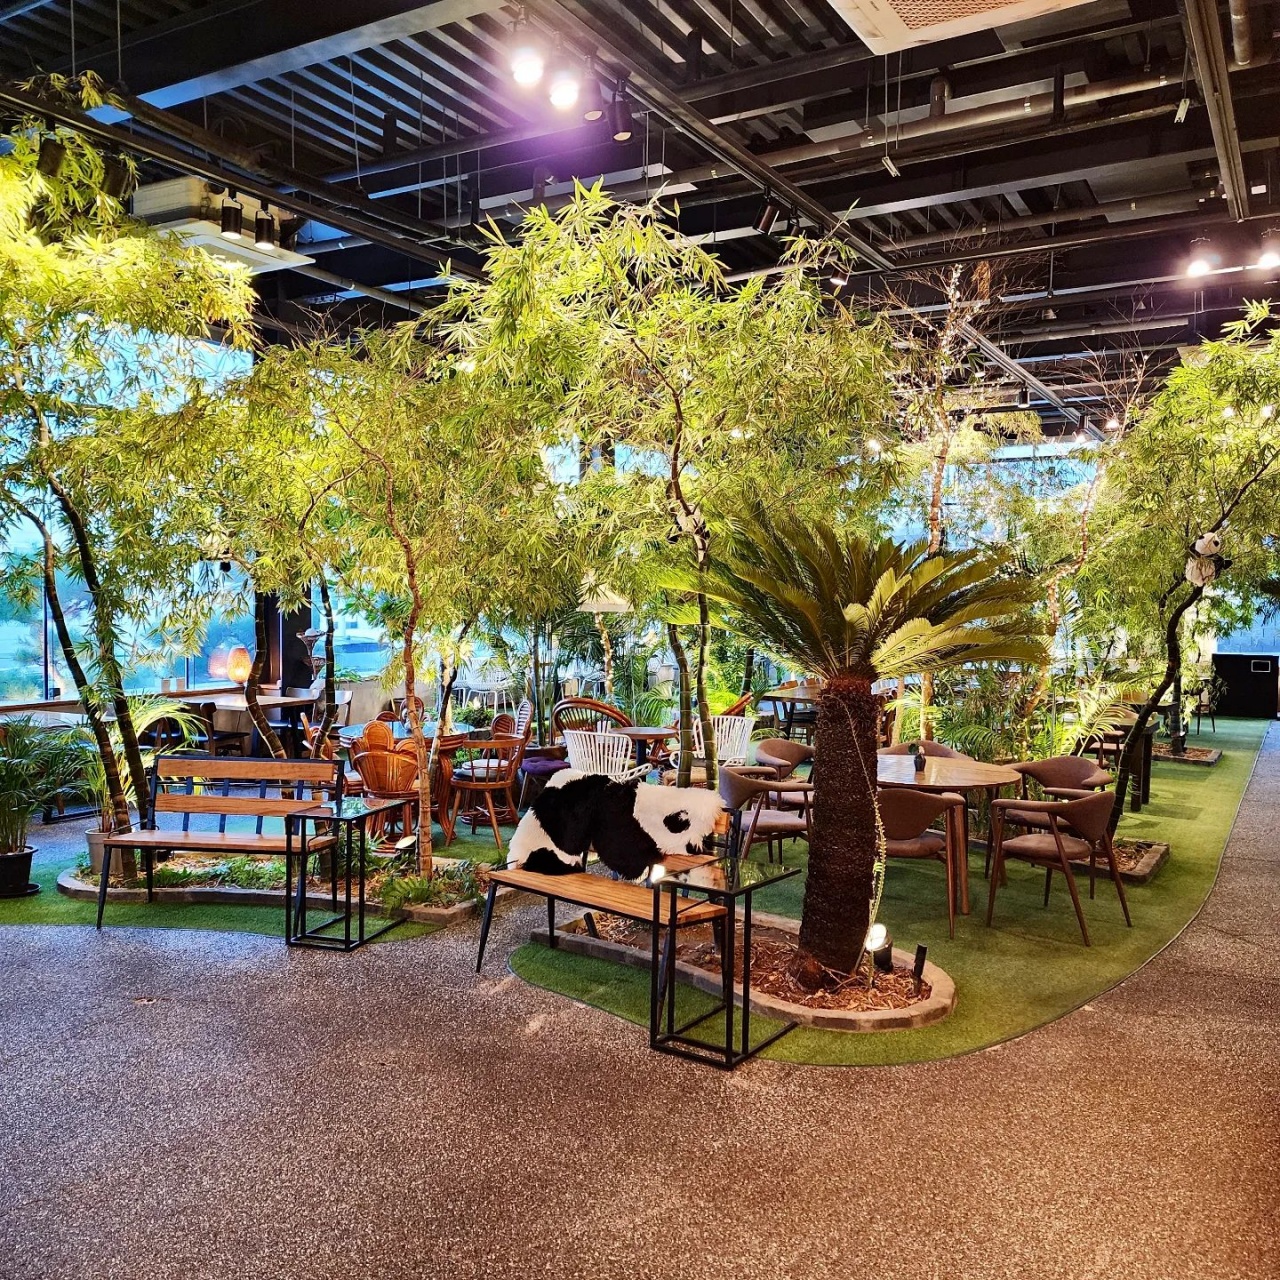 파릇파릇 초록식물 가득, 멋진 정원에서 힐링하는 식물원 카페 BEST 5